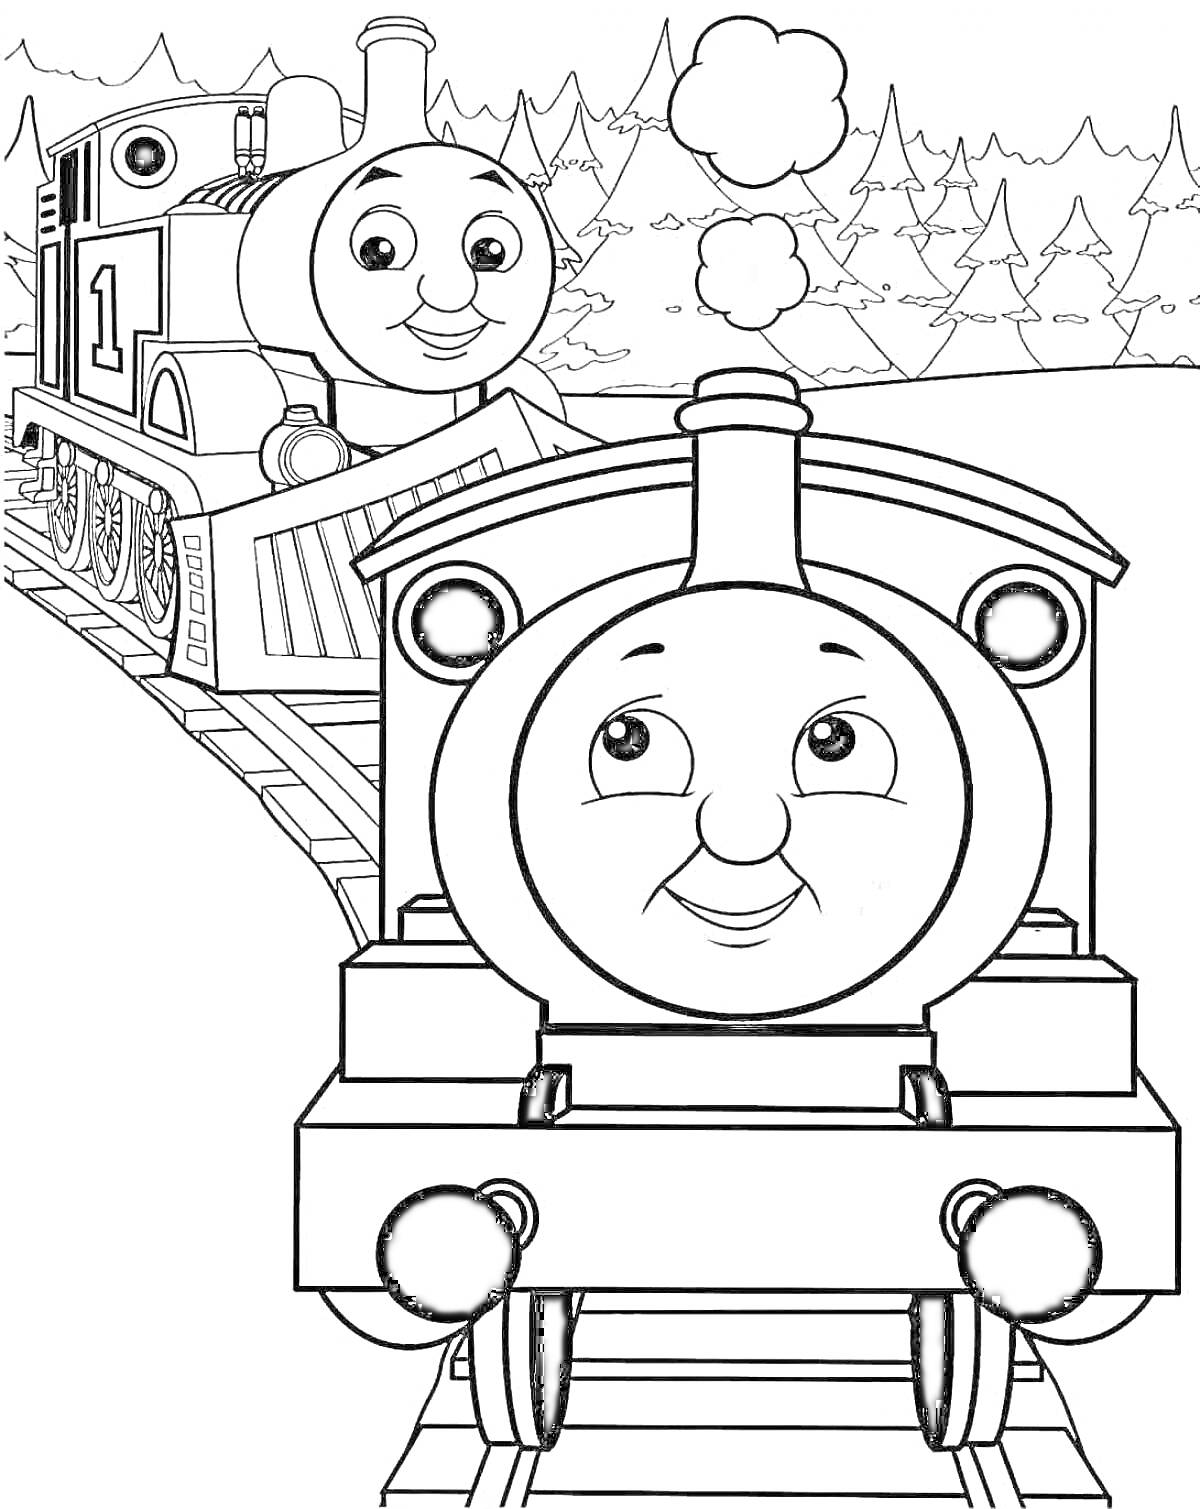 Раскраска Поезд Томас с лицом на переднем и заднем плане, едущий по железной дороге на фоне леса и гор